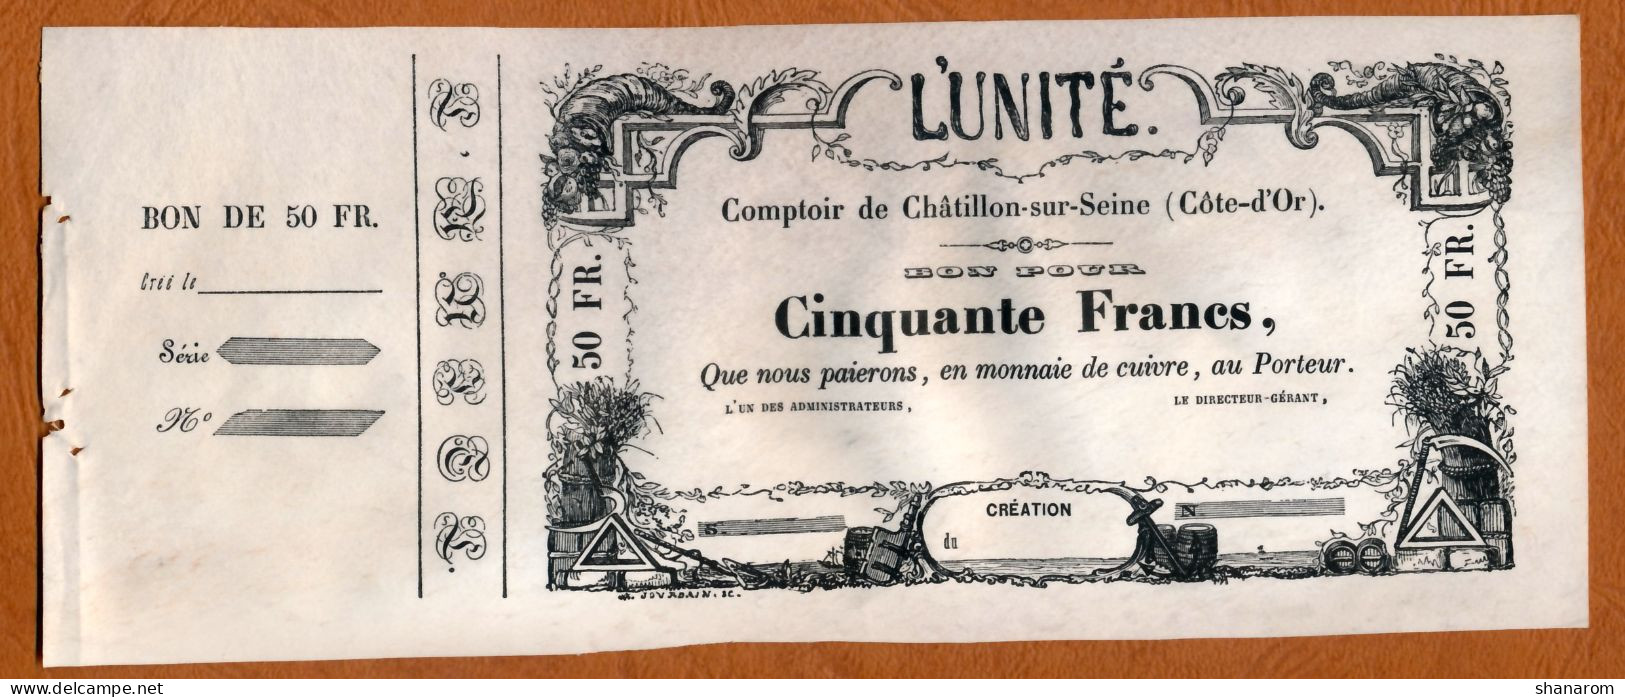 BON COMMERCIAL // CHATILLON-SUR-SEINE (Côte-d'Or) // L'UNITE // Cinquante Francs - Bons & Nécessité